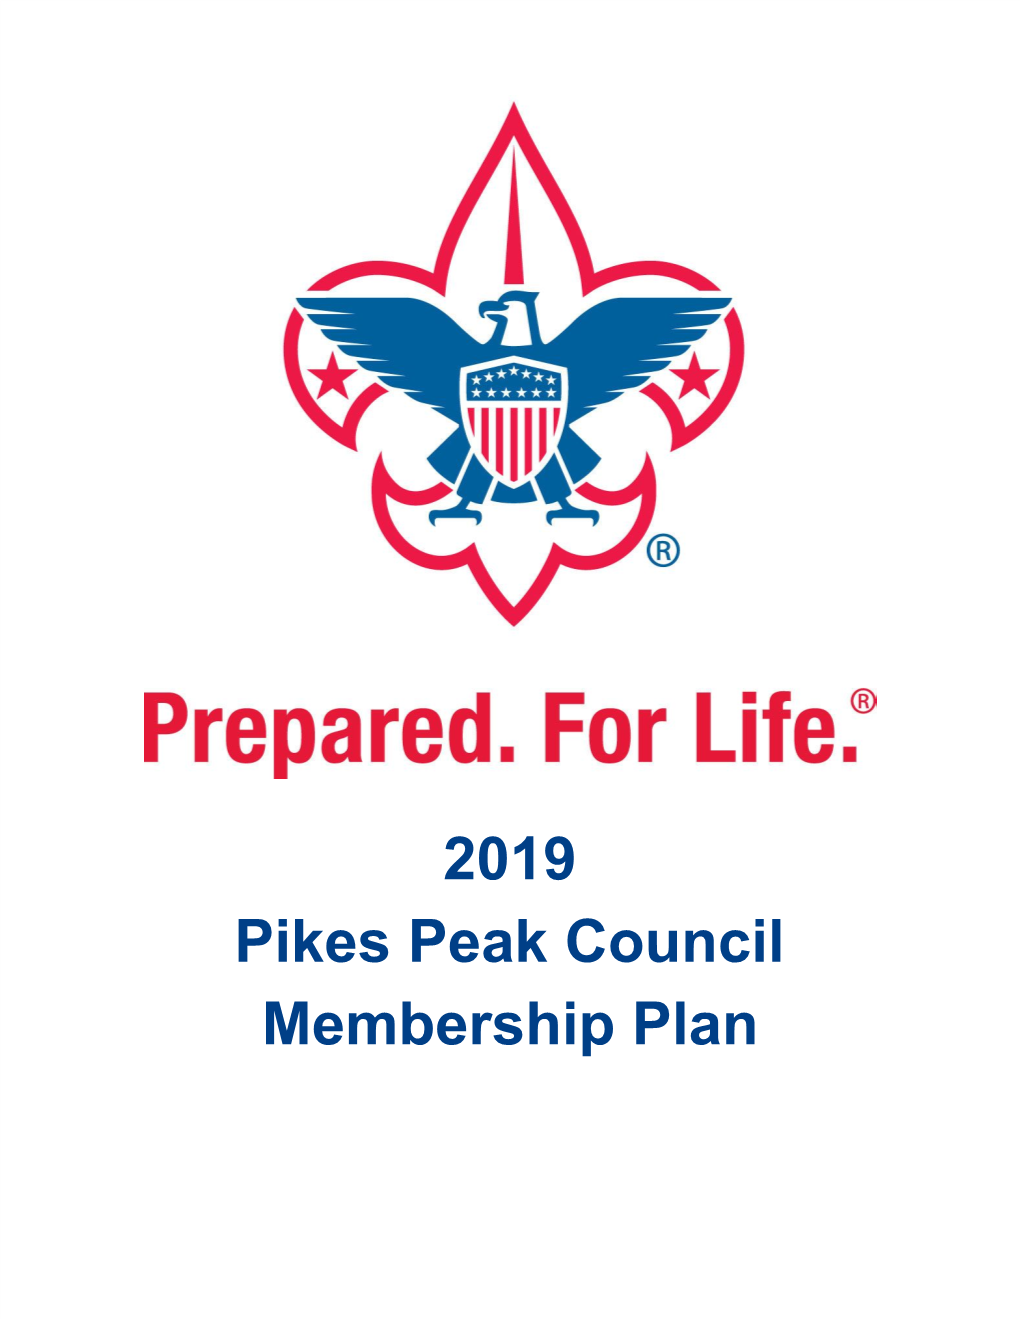 2019 Membership Plan